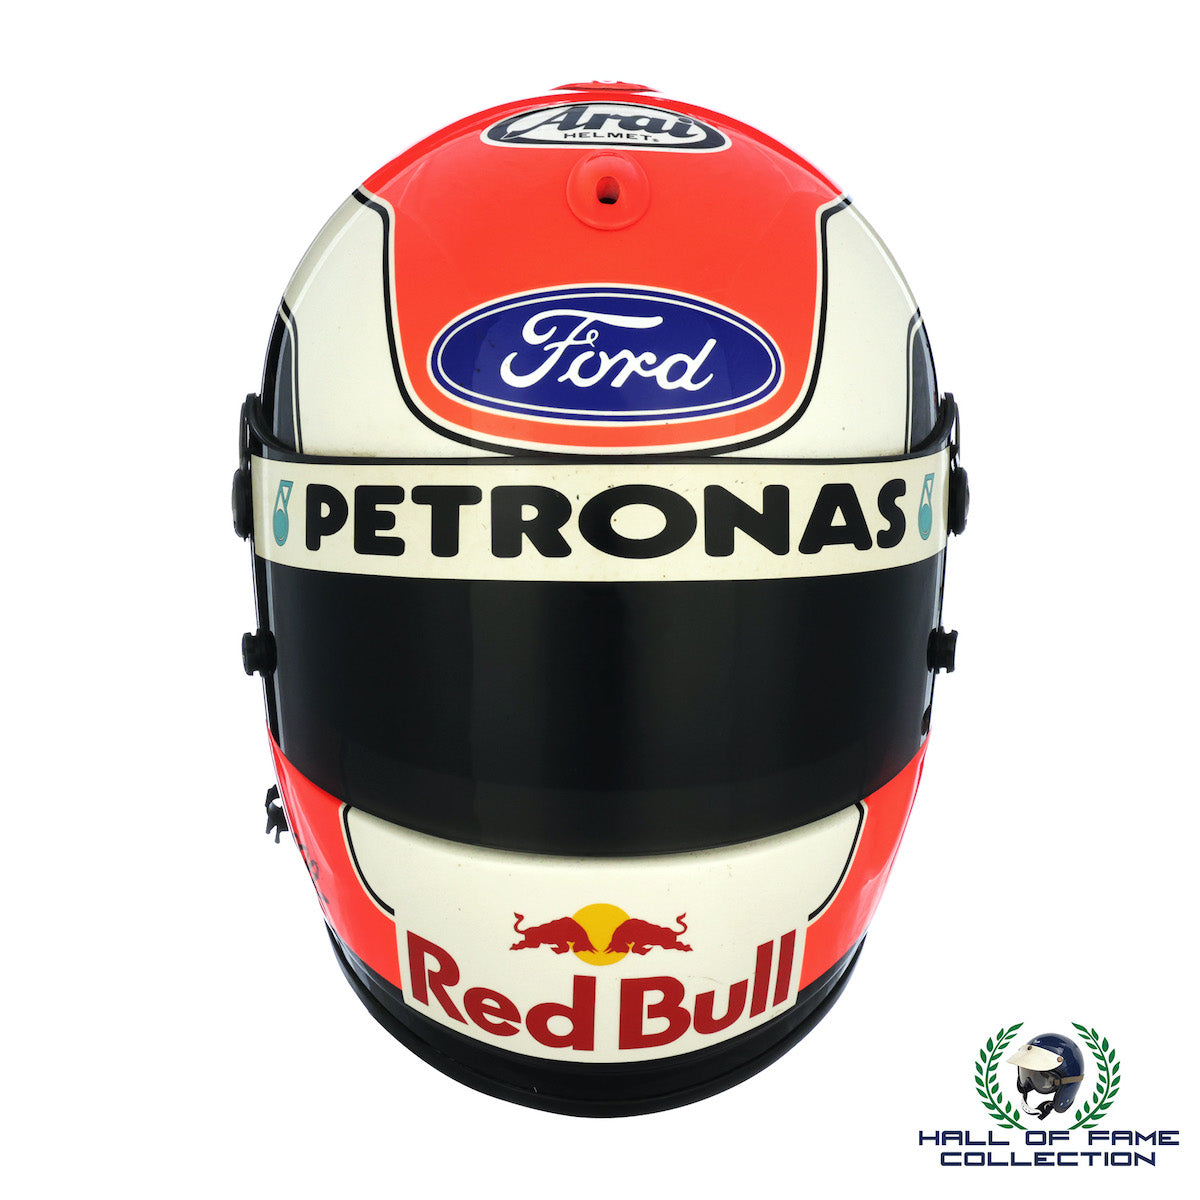 1996 Johnny Herbert Signed Race Used Red Bull Sauber Ford F1 Helmet